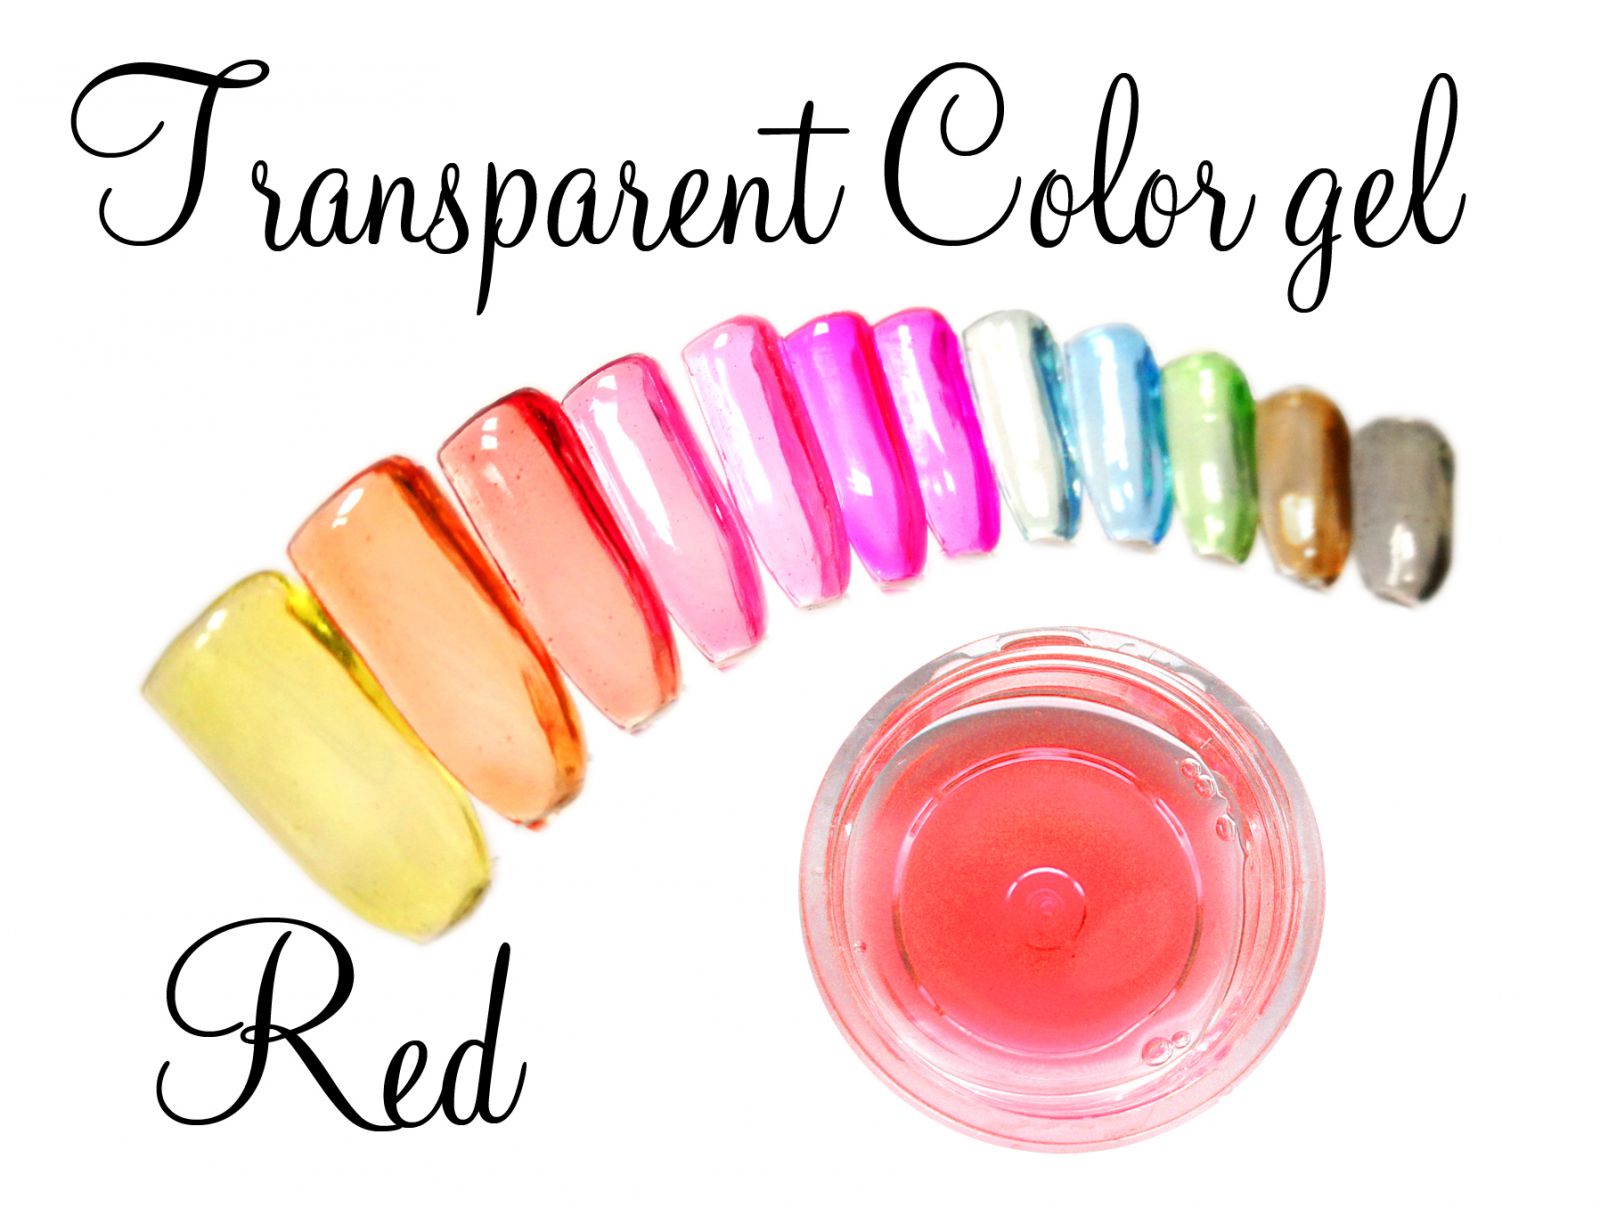 Transparent color gel - Red